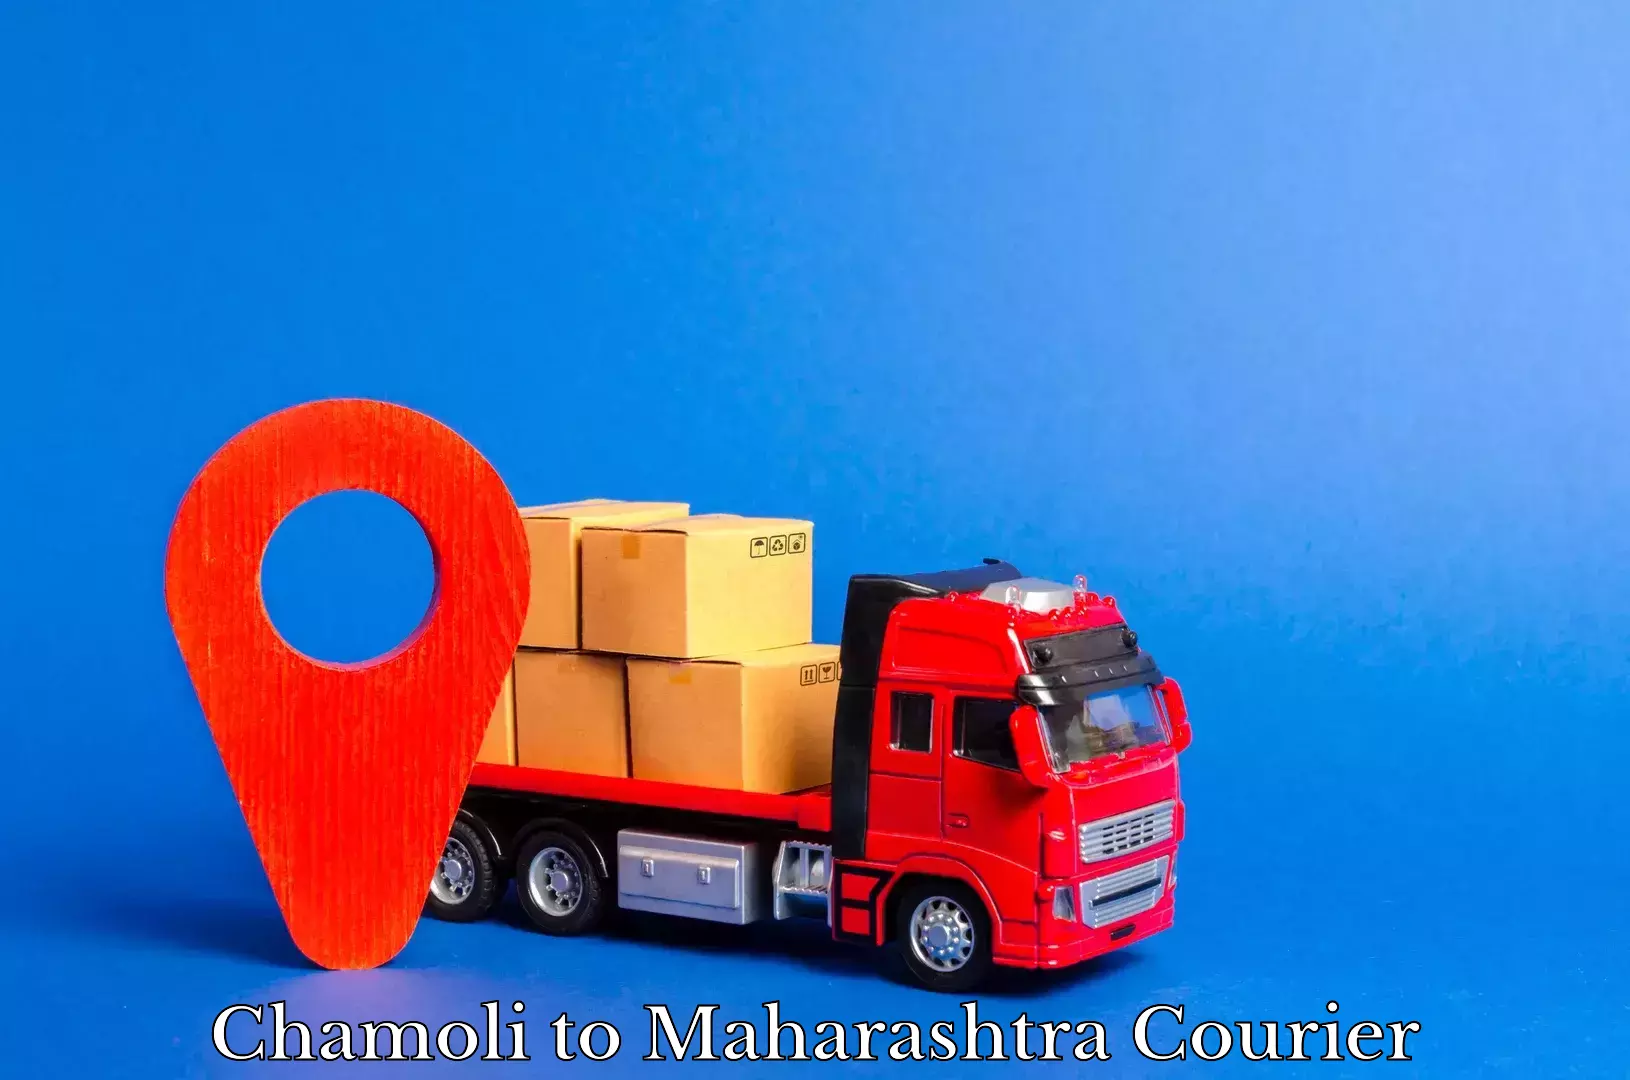 Business delivery service Chamoli to Maharashtra